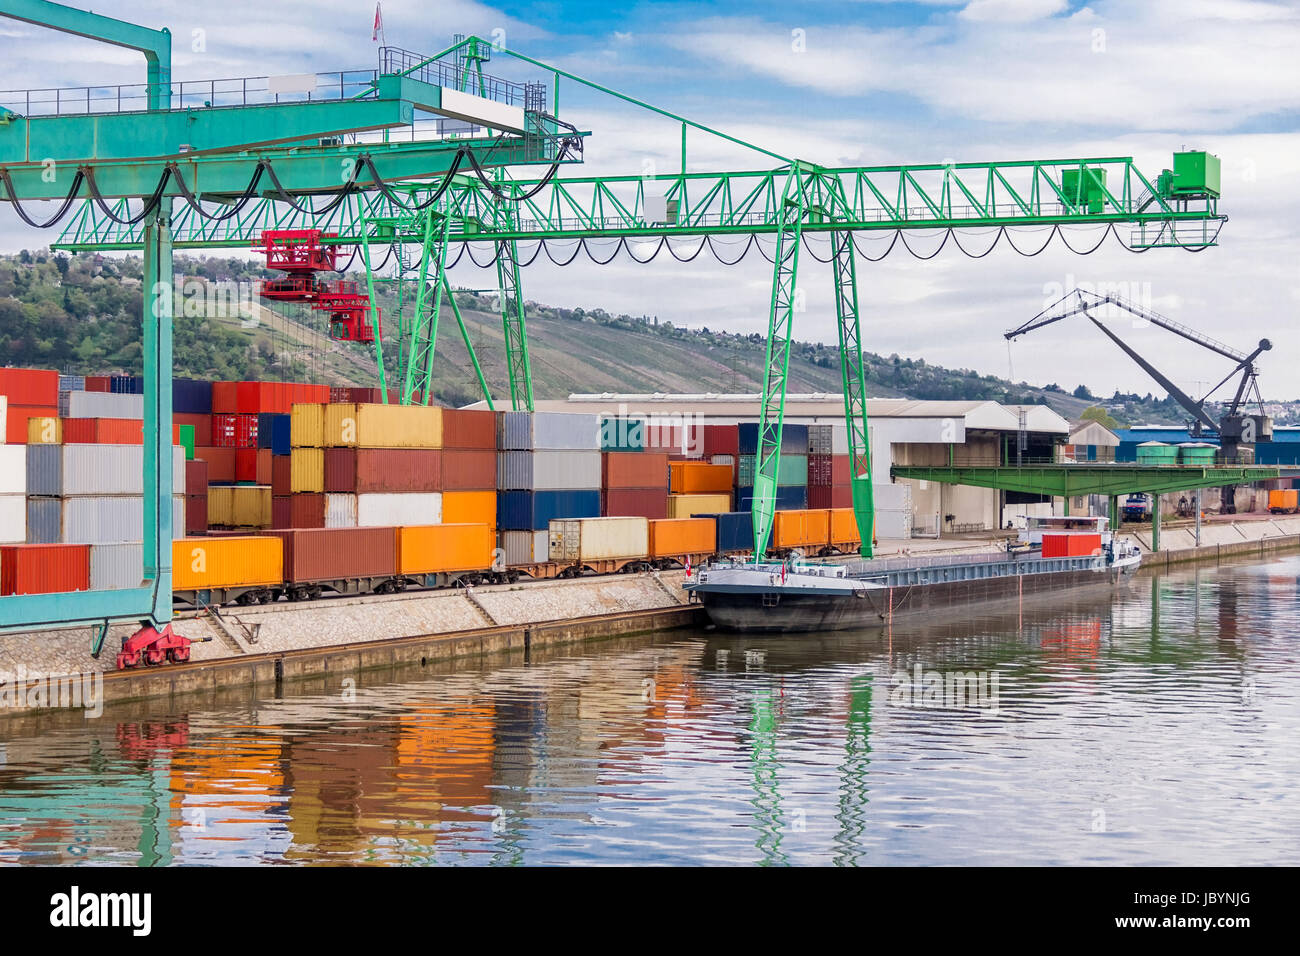 Anlegestelle im Hafen mit gestapelten Containern am Dock für Import und Export Cargo mit blauem Himmel Stock Photo